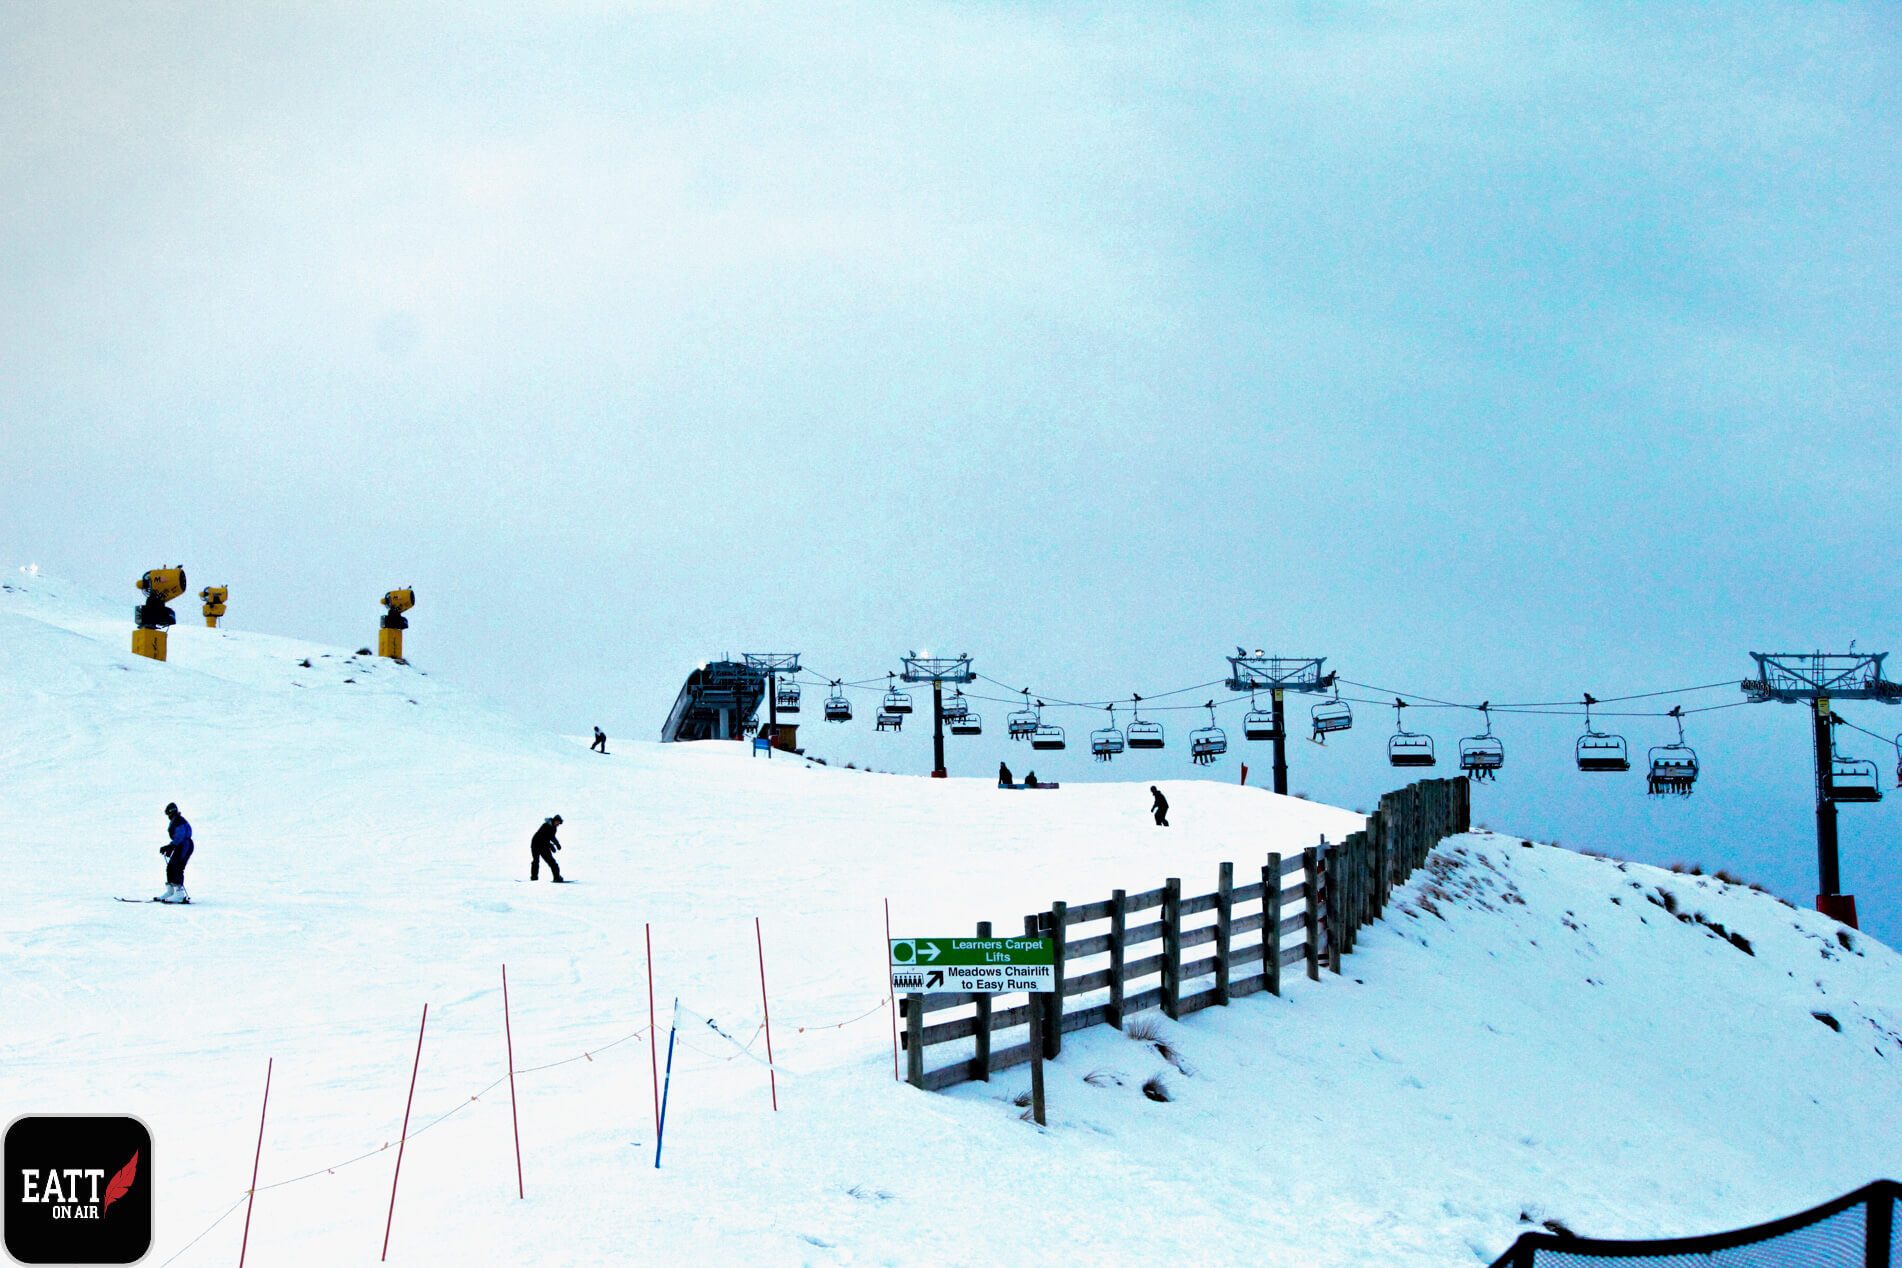 Coronet Peak learner ski slopes